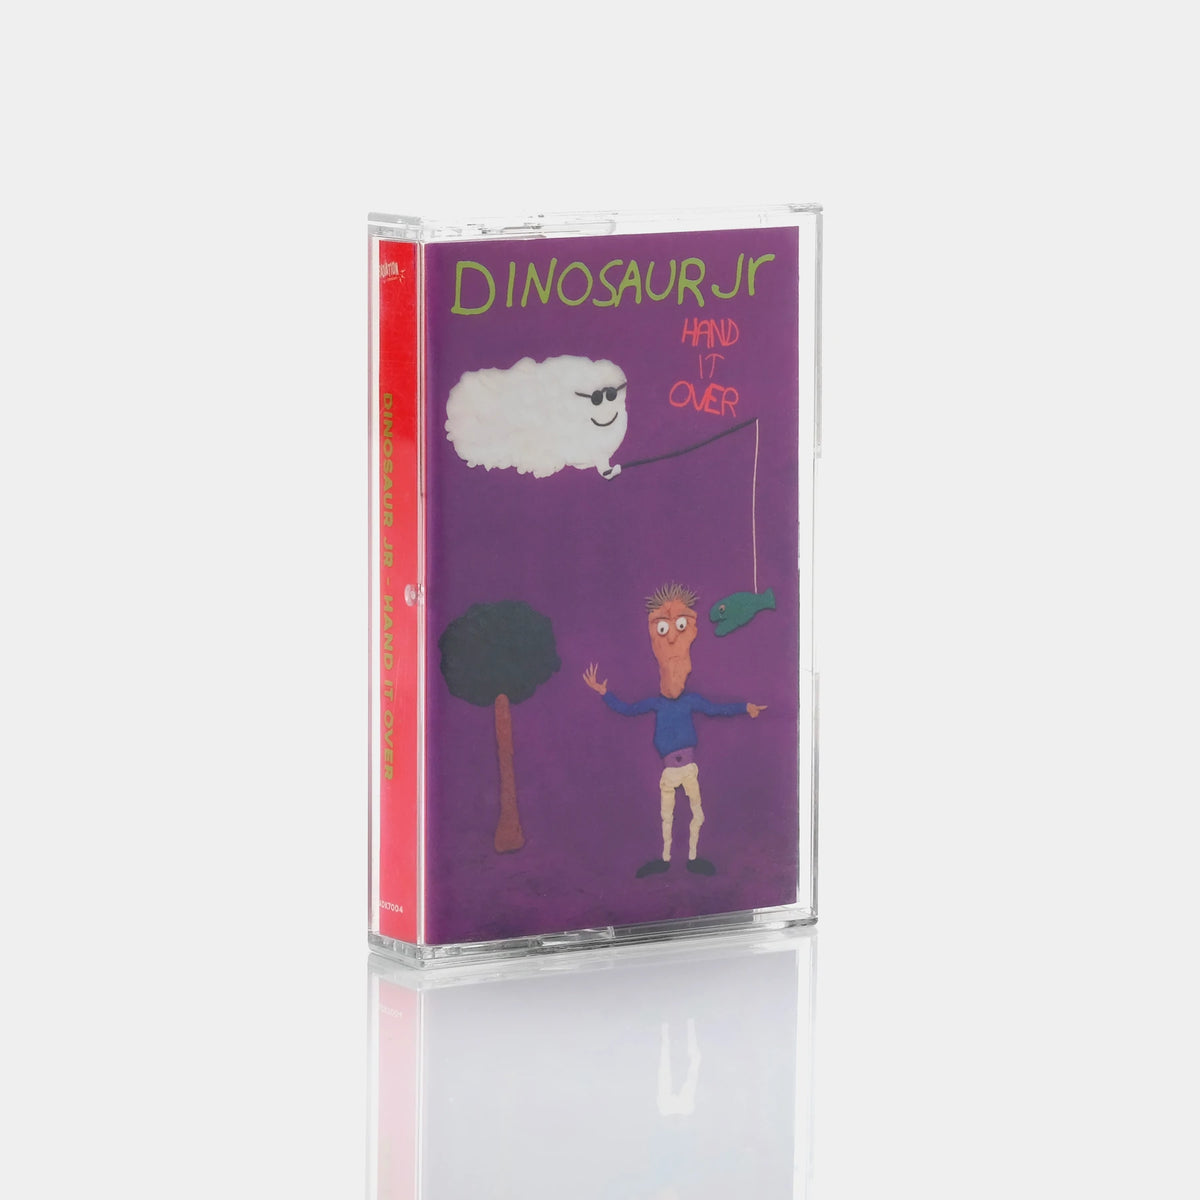 Dinosaur Jr - Hand It Over Cassette